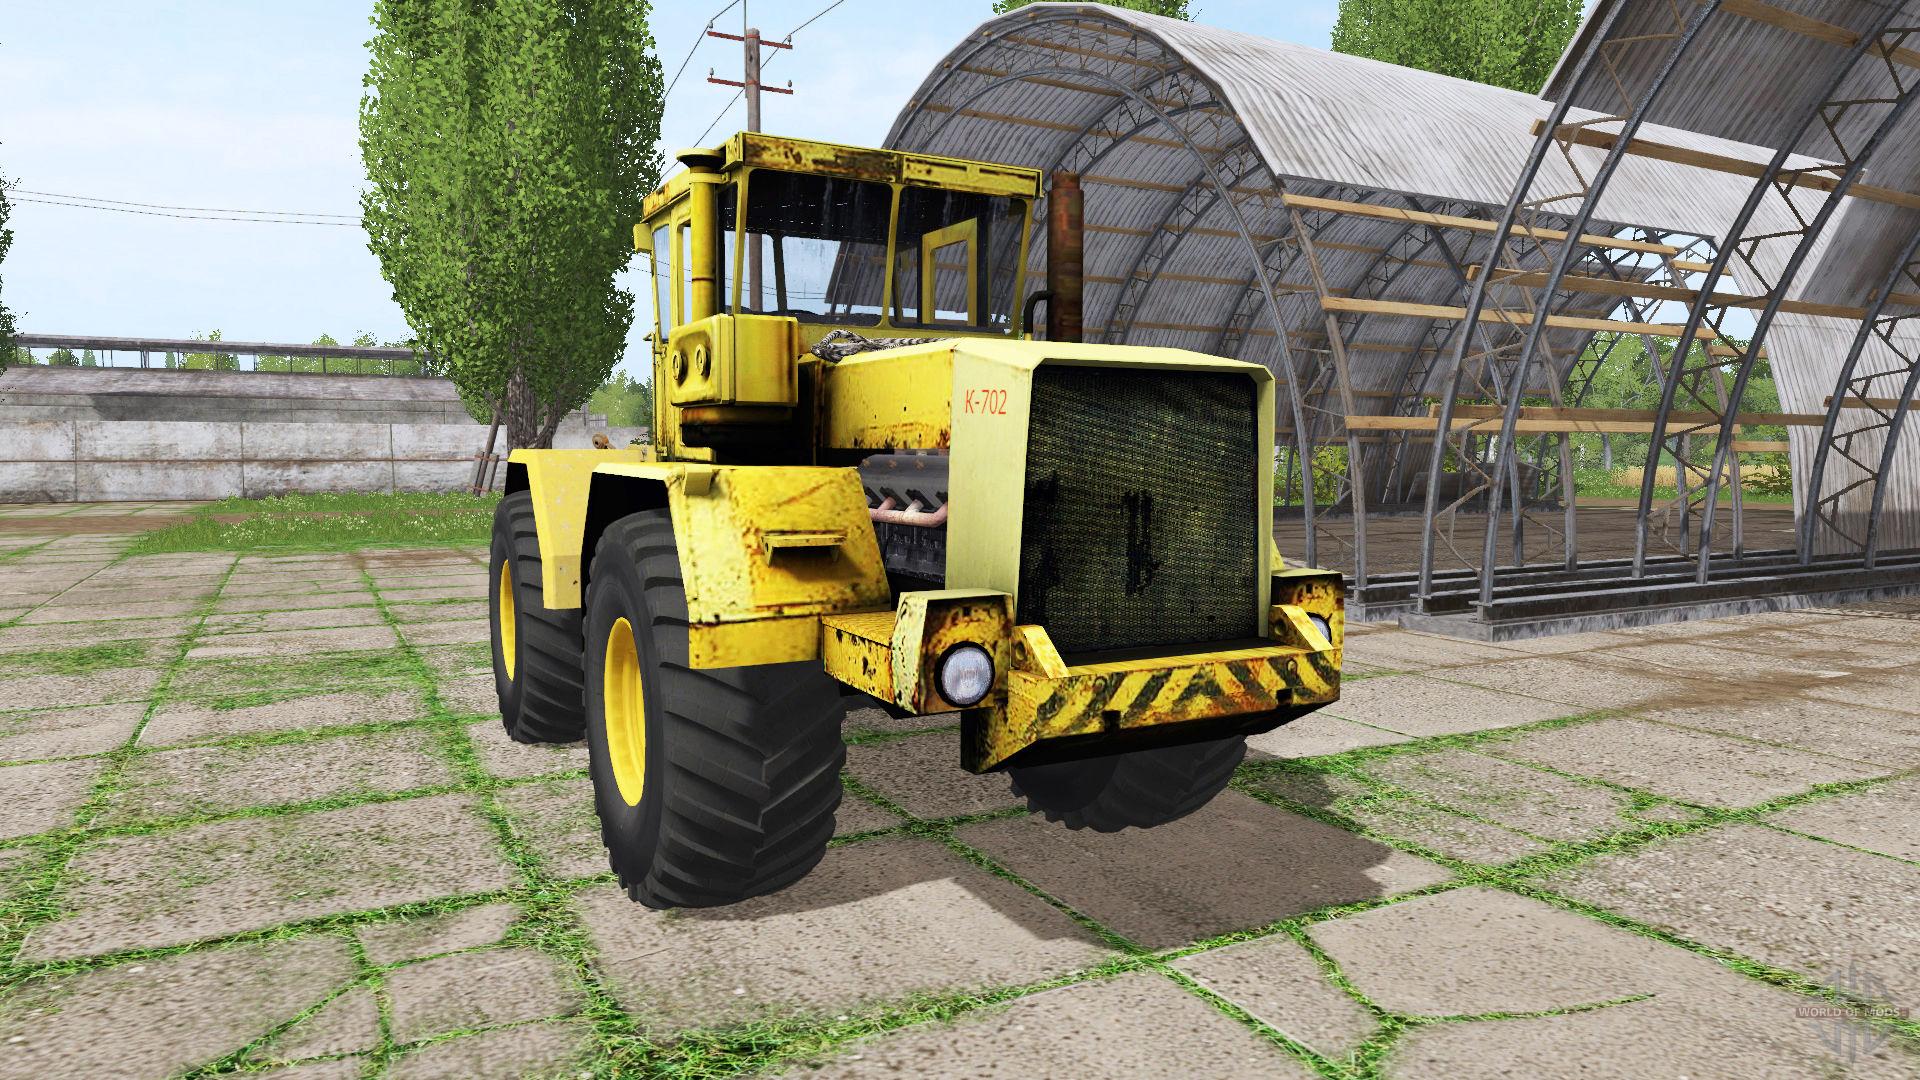 fs17-kirovets-k-702-fs-17-tractors-mod-download